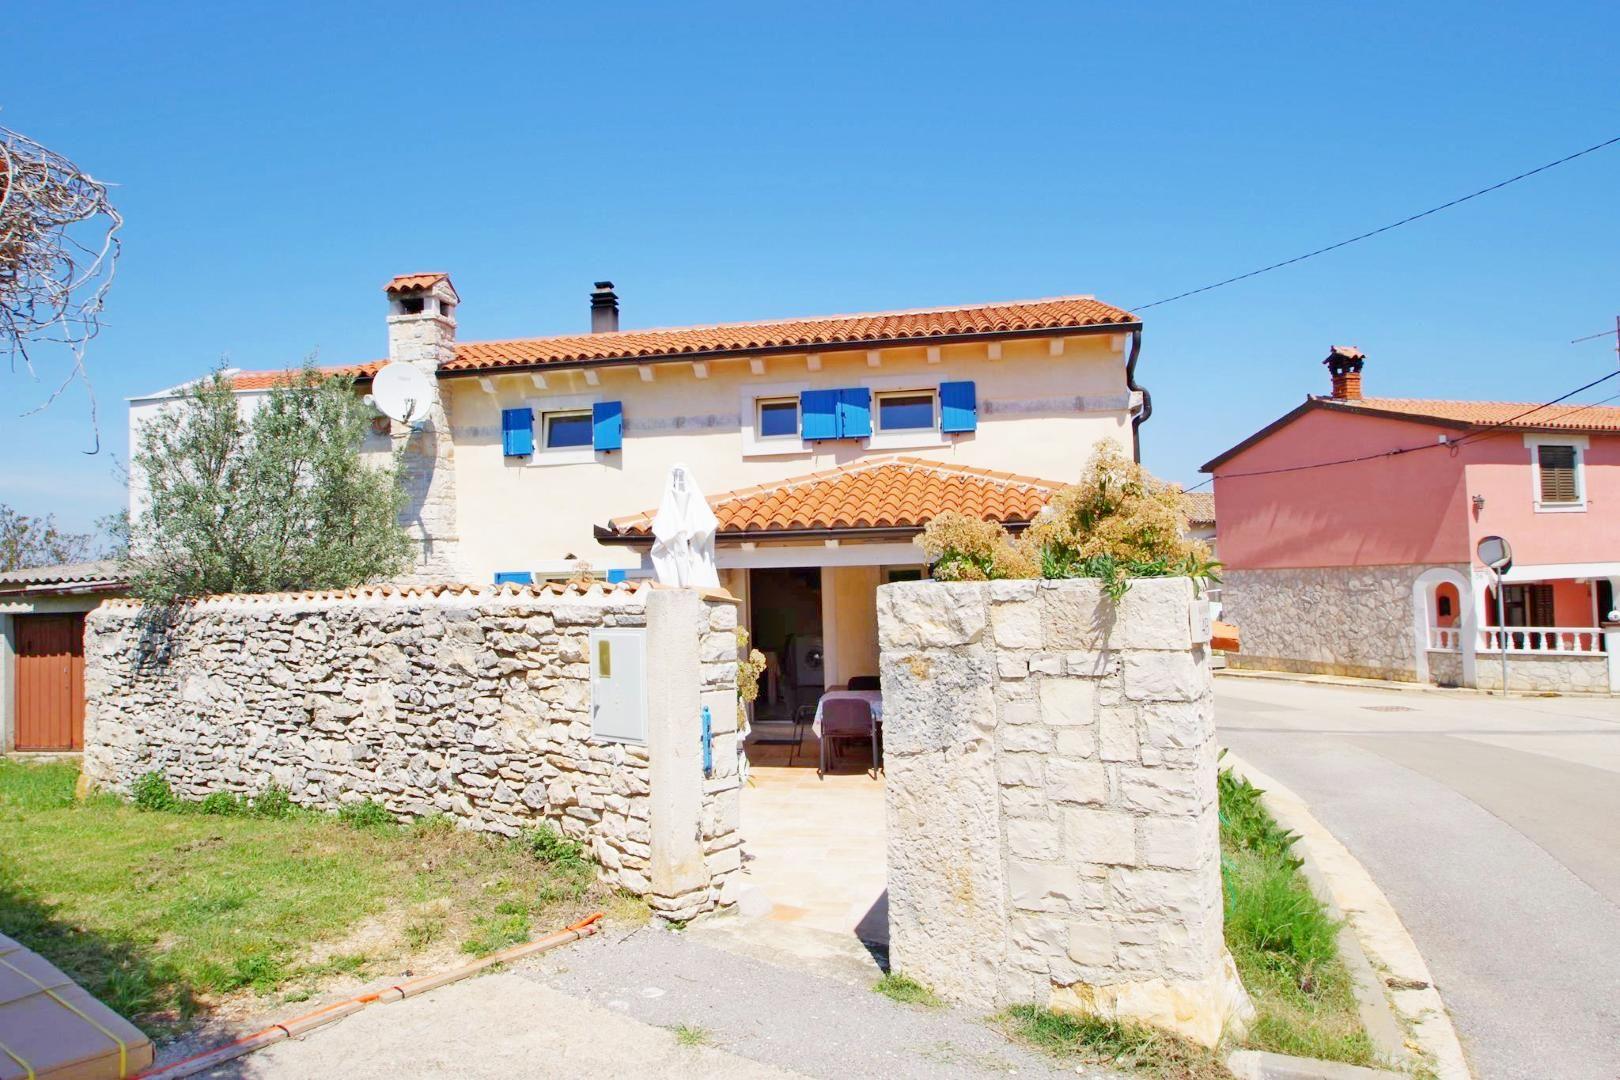 Ferienhaus in Kavran mit Terrasse, Garten und Gril Ferienhaus in Istrien